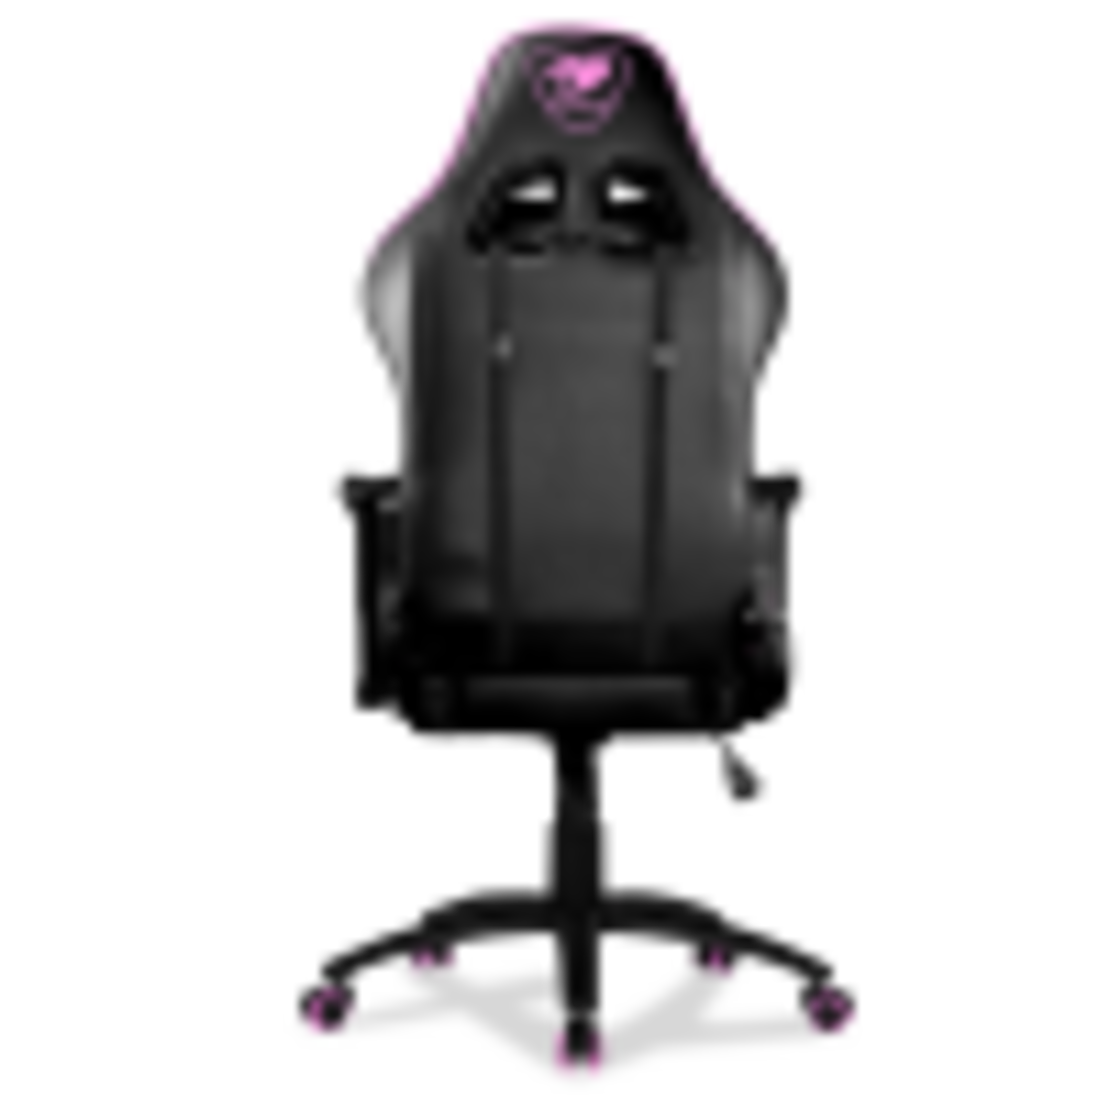 כסא גיימינג COUGAR Armor One Pink gaming chair